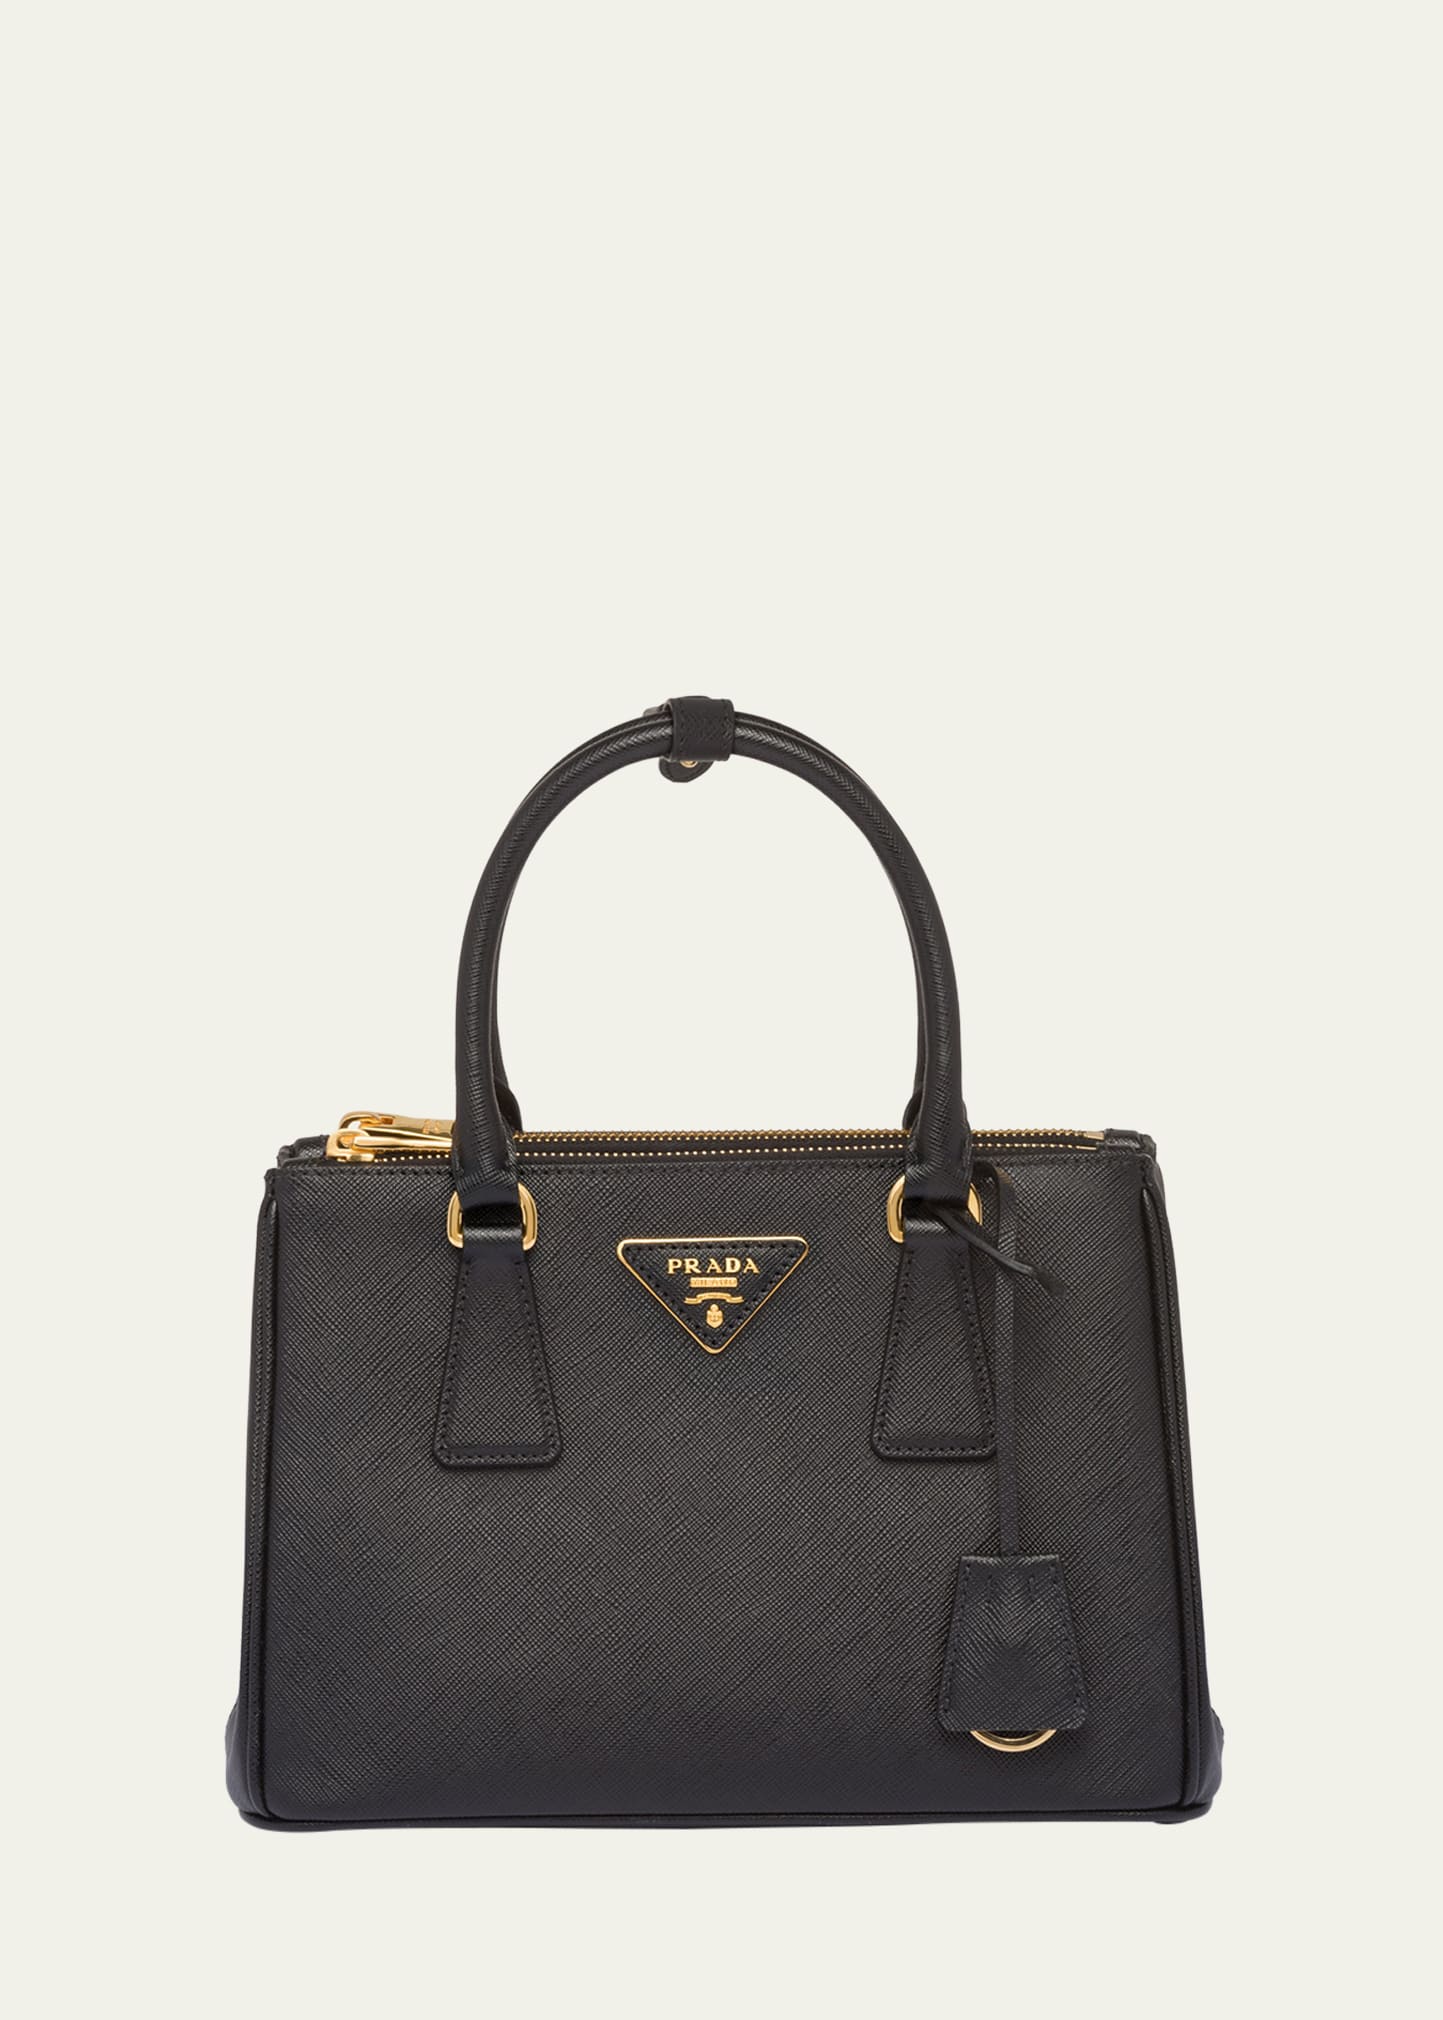 Prada Galleria Small Saffiano Top-handle Bag In F0002 Nero